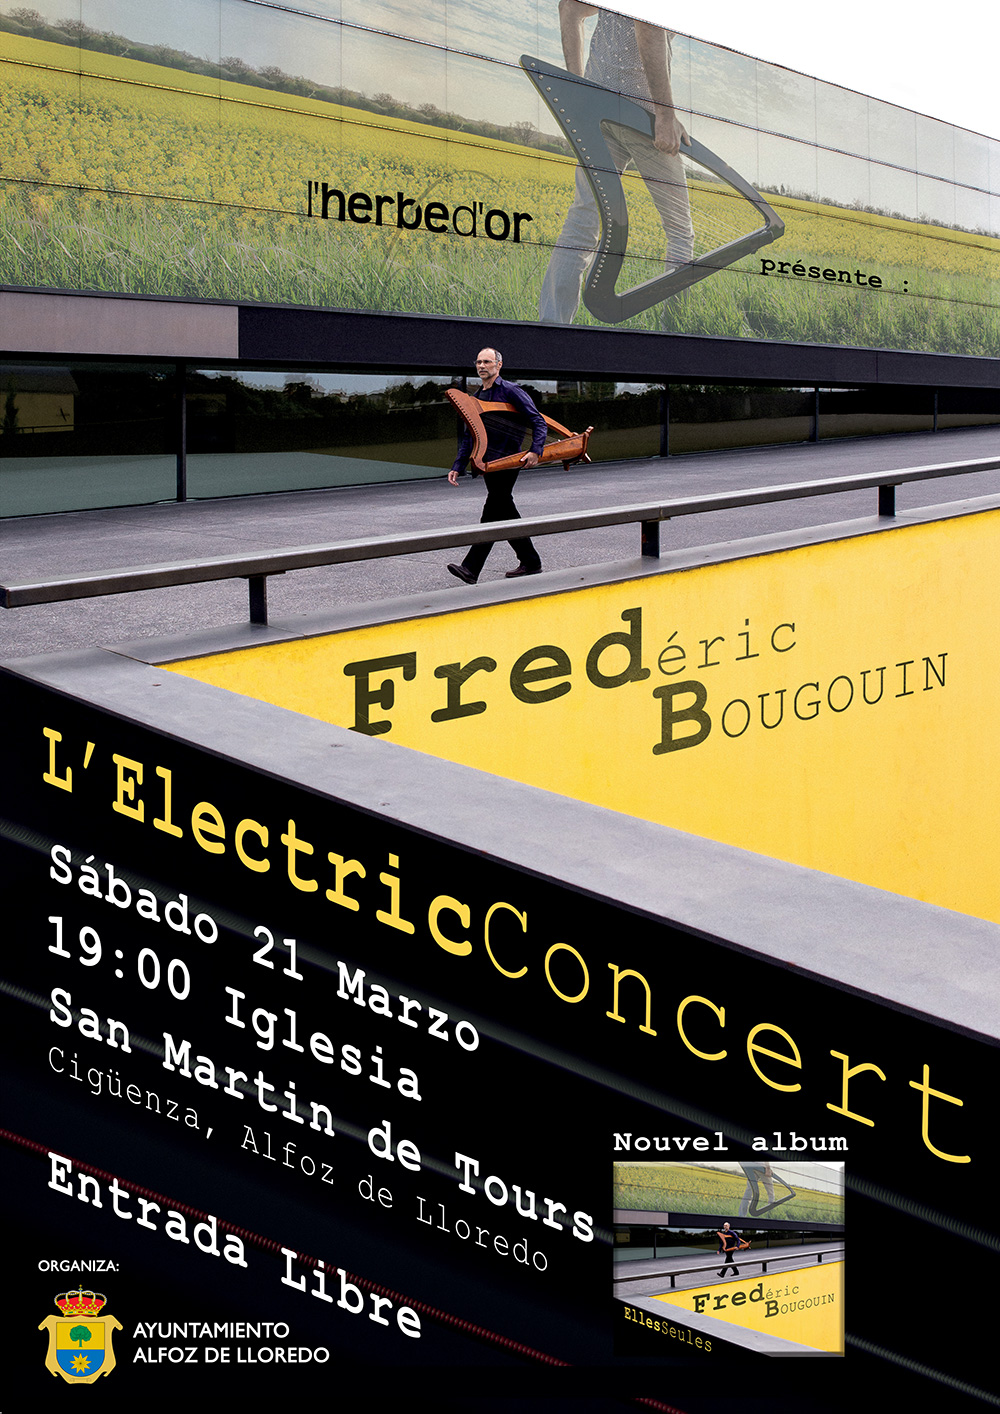 Concierto de Fredéric Bougouin en Cigüenza 21 de marzo